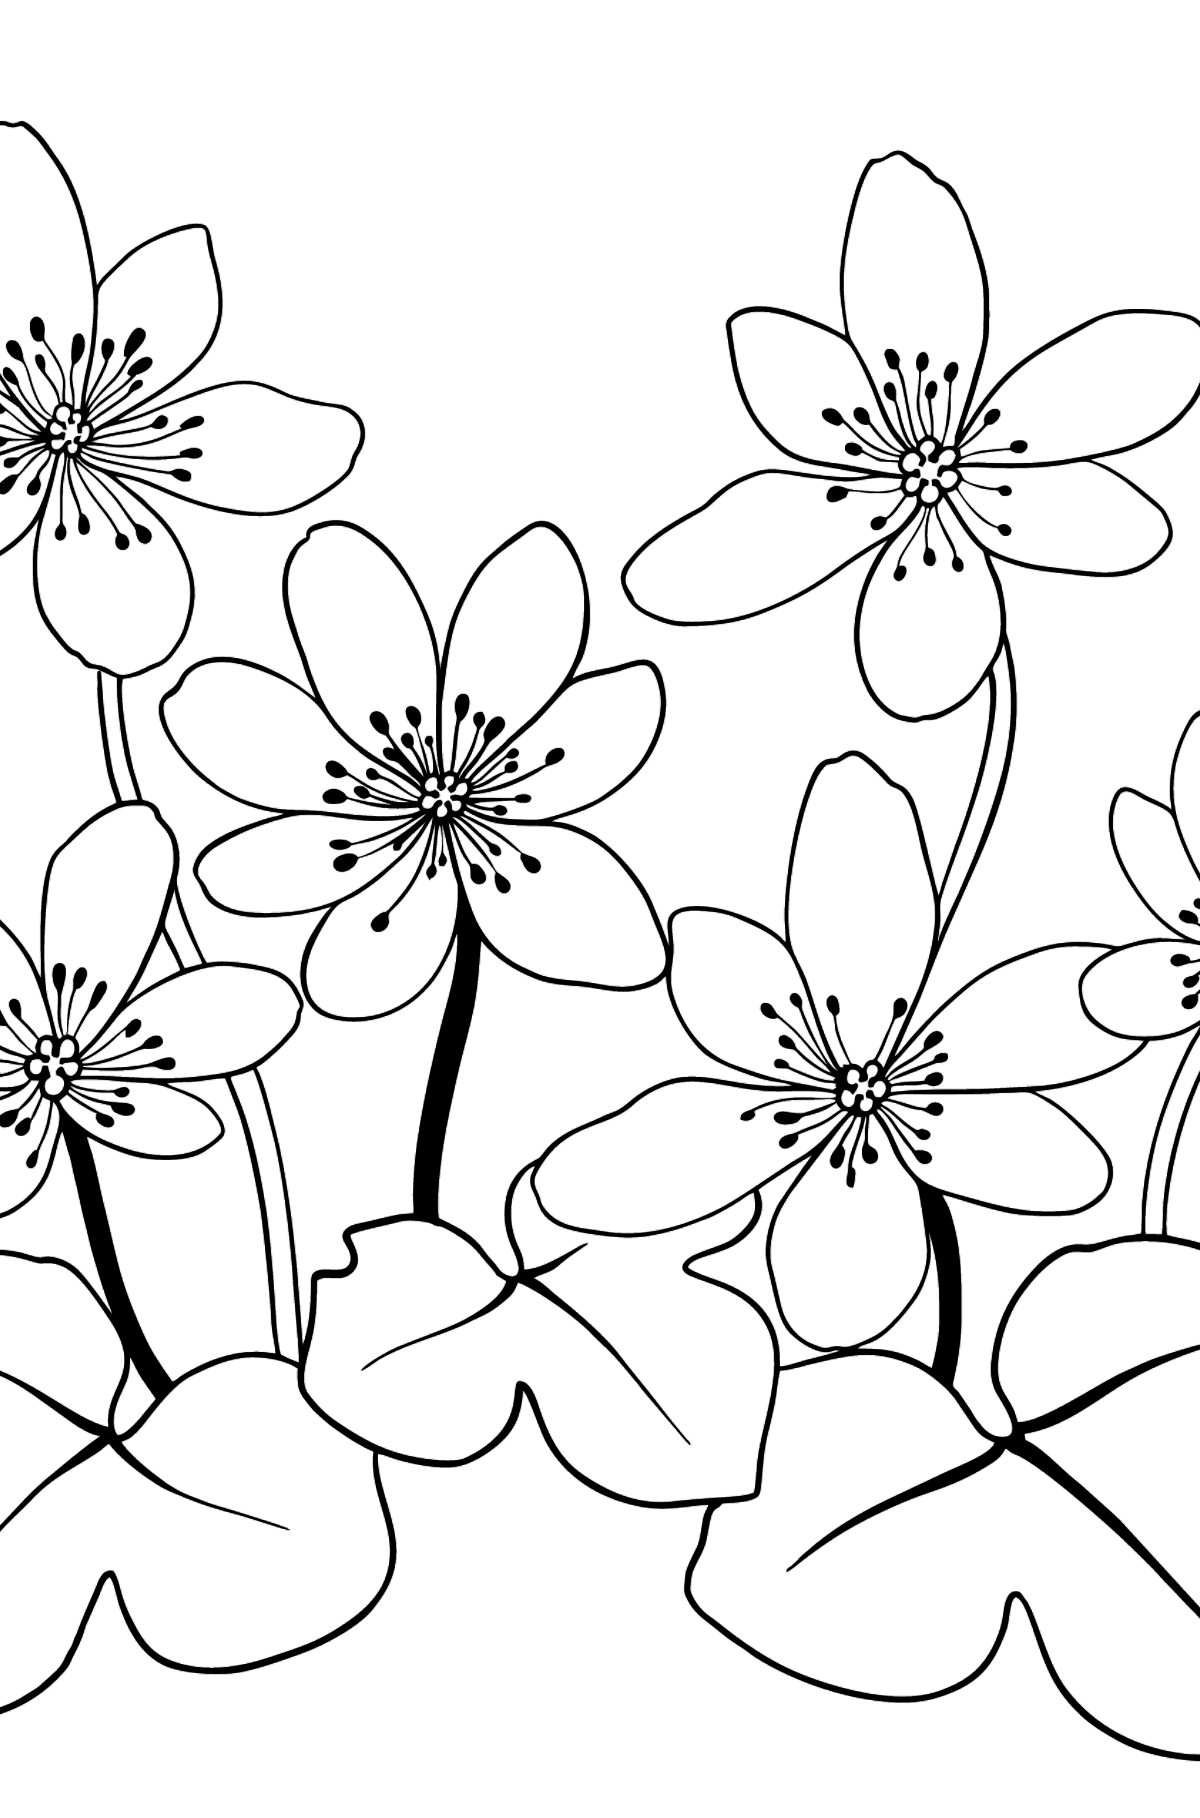 Boyama sayfası çiçek ciğerotu - Boyamalar çocuklar için